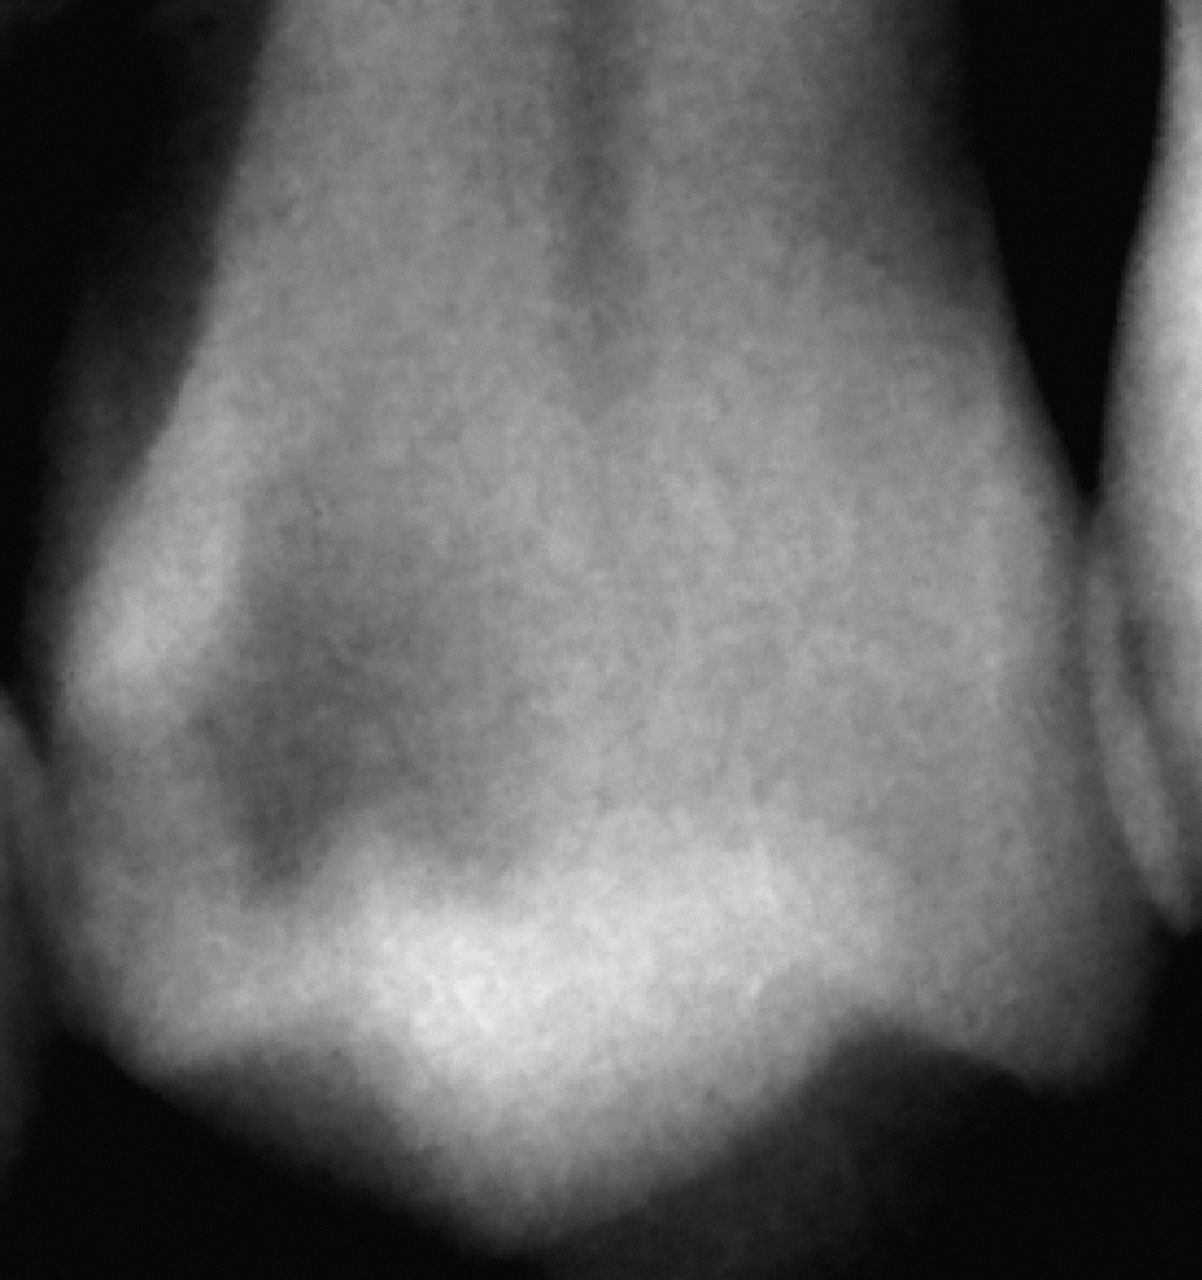 Abb. 5 Selektive Exkavation in einem vitalen Prämolaren eines 41-jährigen Patienten. Die Pulpa des Zahnes war sensibel und zeigte keine Zeichen für eine irreversible Pulpitis. Die kariöse Läsion war radiologisch bis in das innere Dentindrittel ausgedehnt, ...